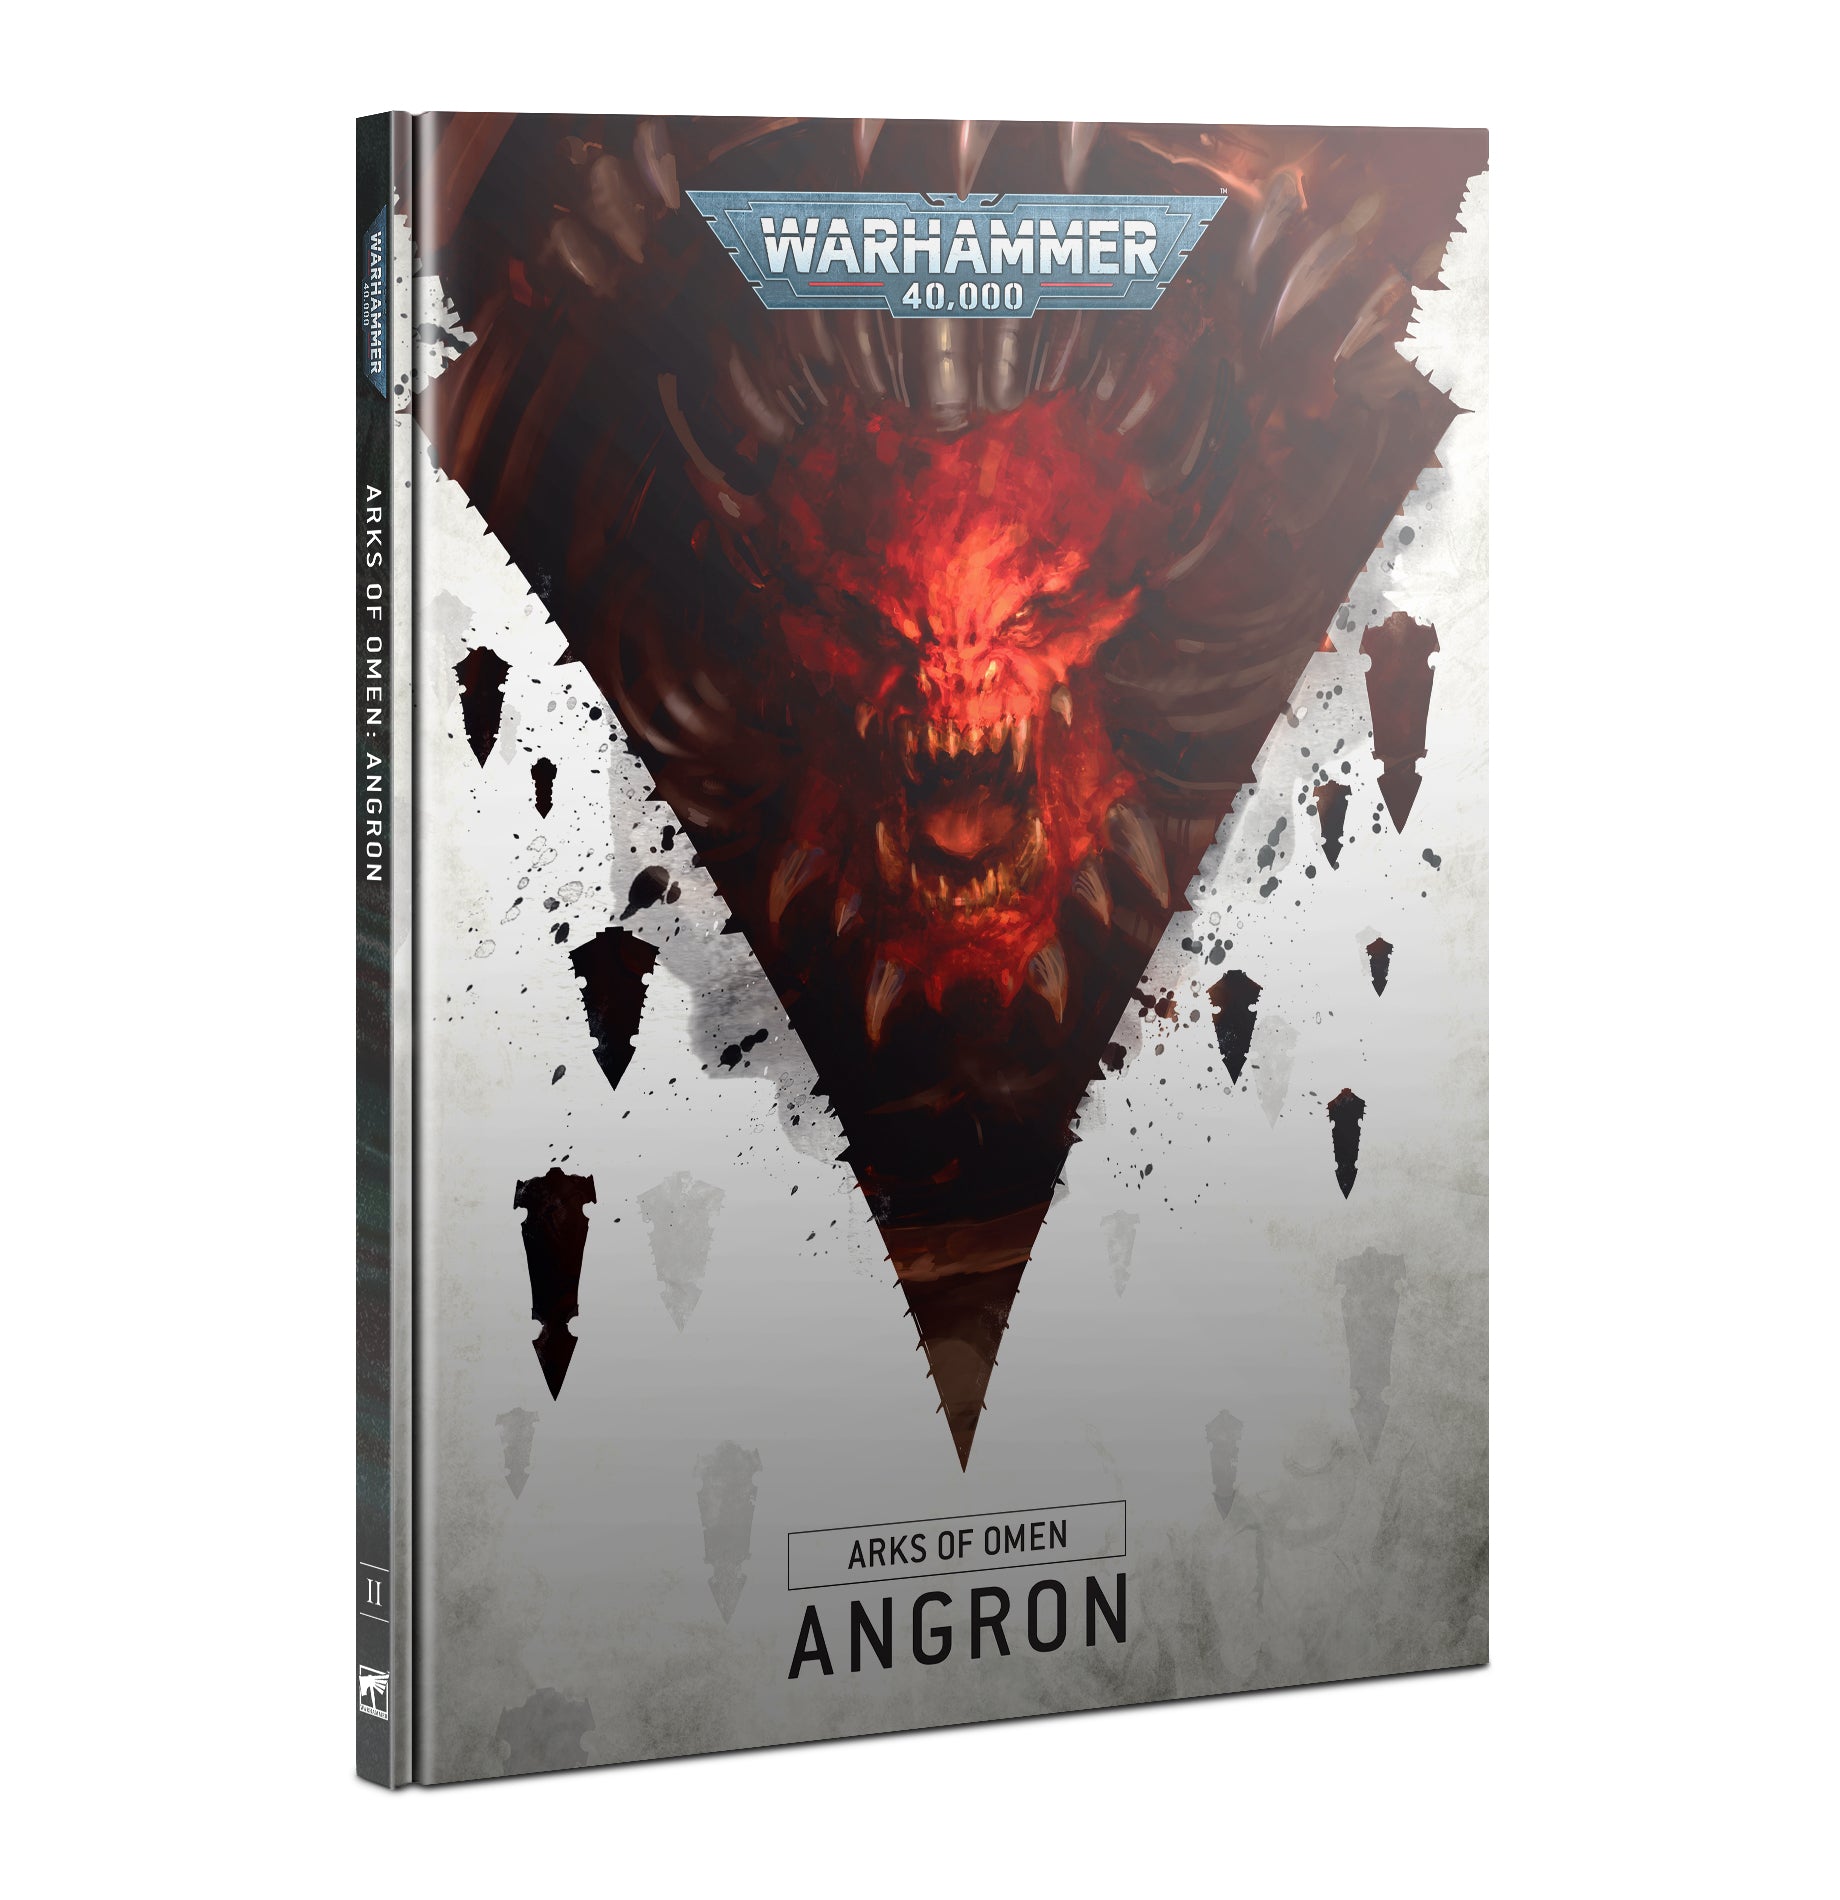 Warhammer 40,000 Arks of Omen: Angron